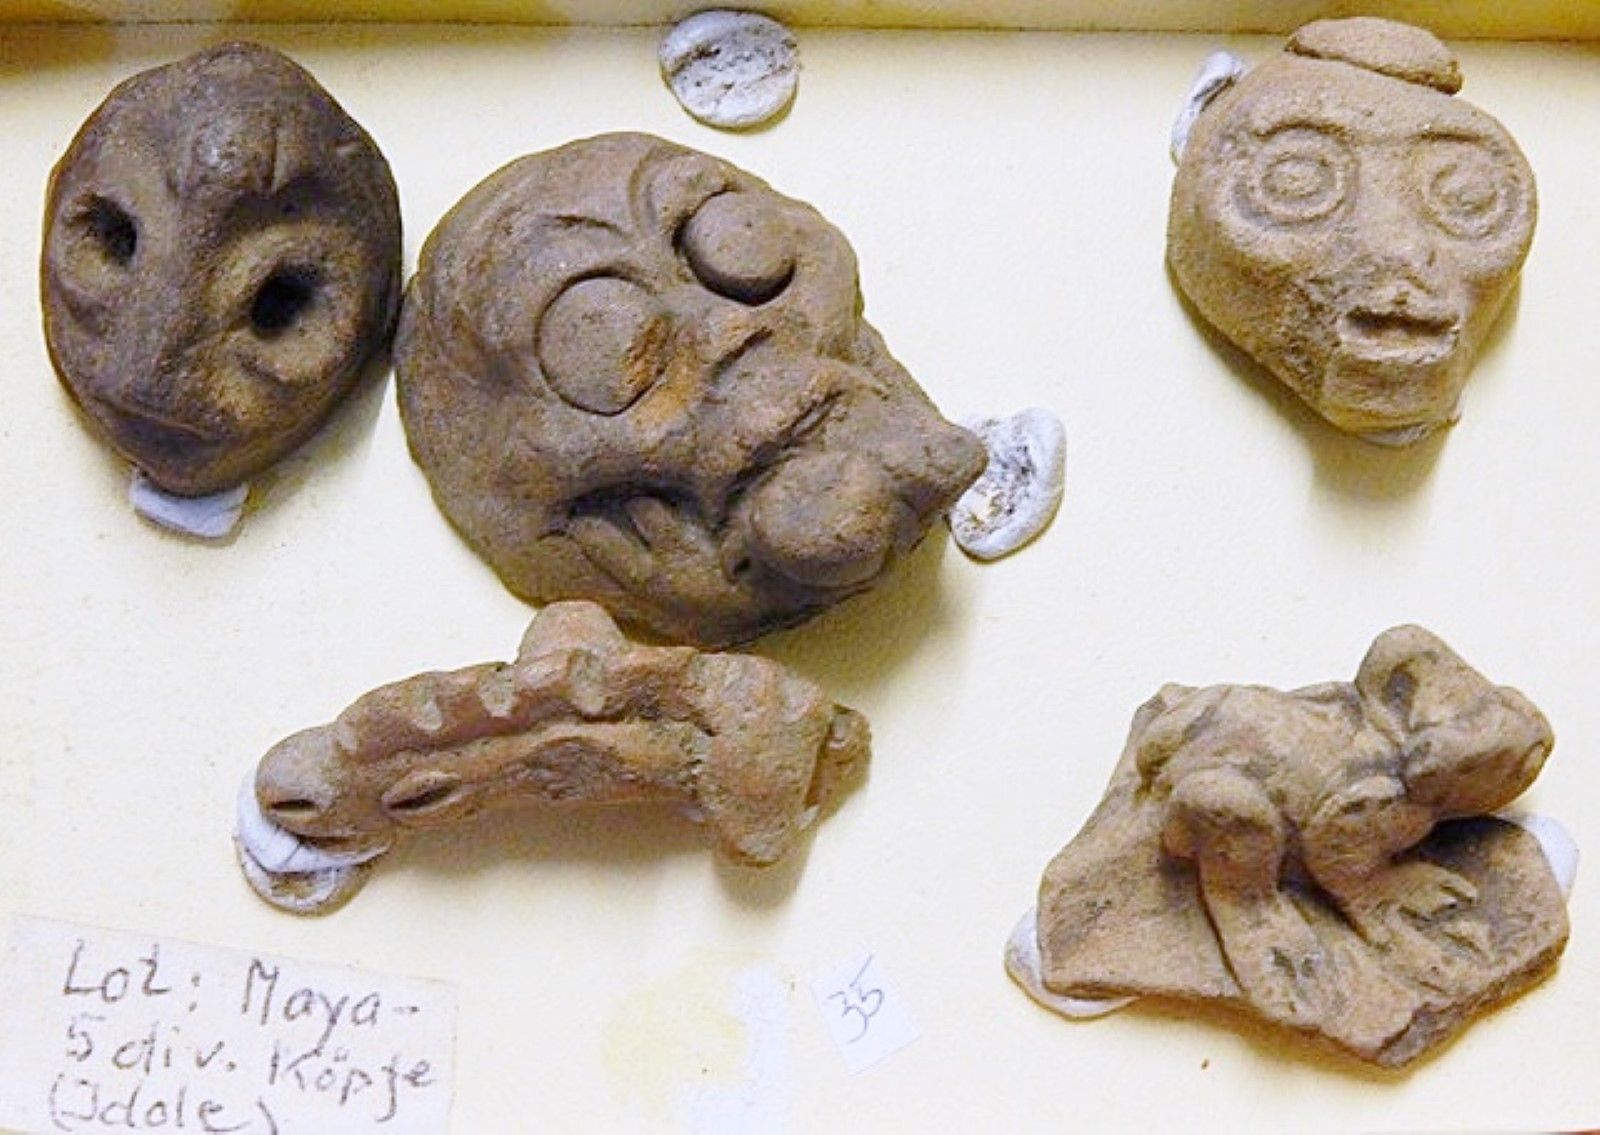 Null Aus Mayakultur:5 Stück diverse Köpfe(Idole), zusammen